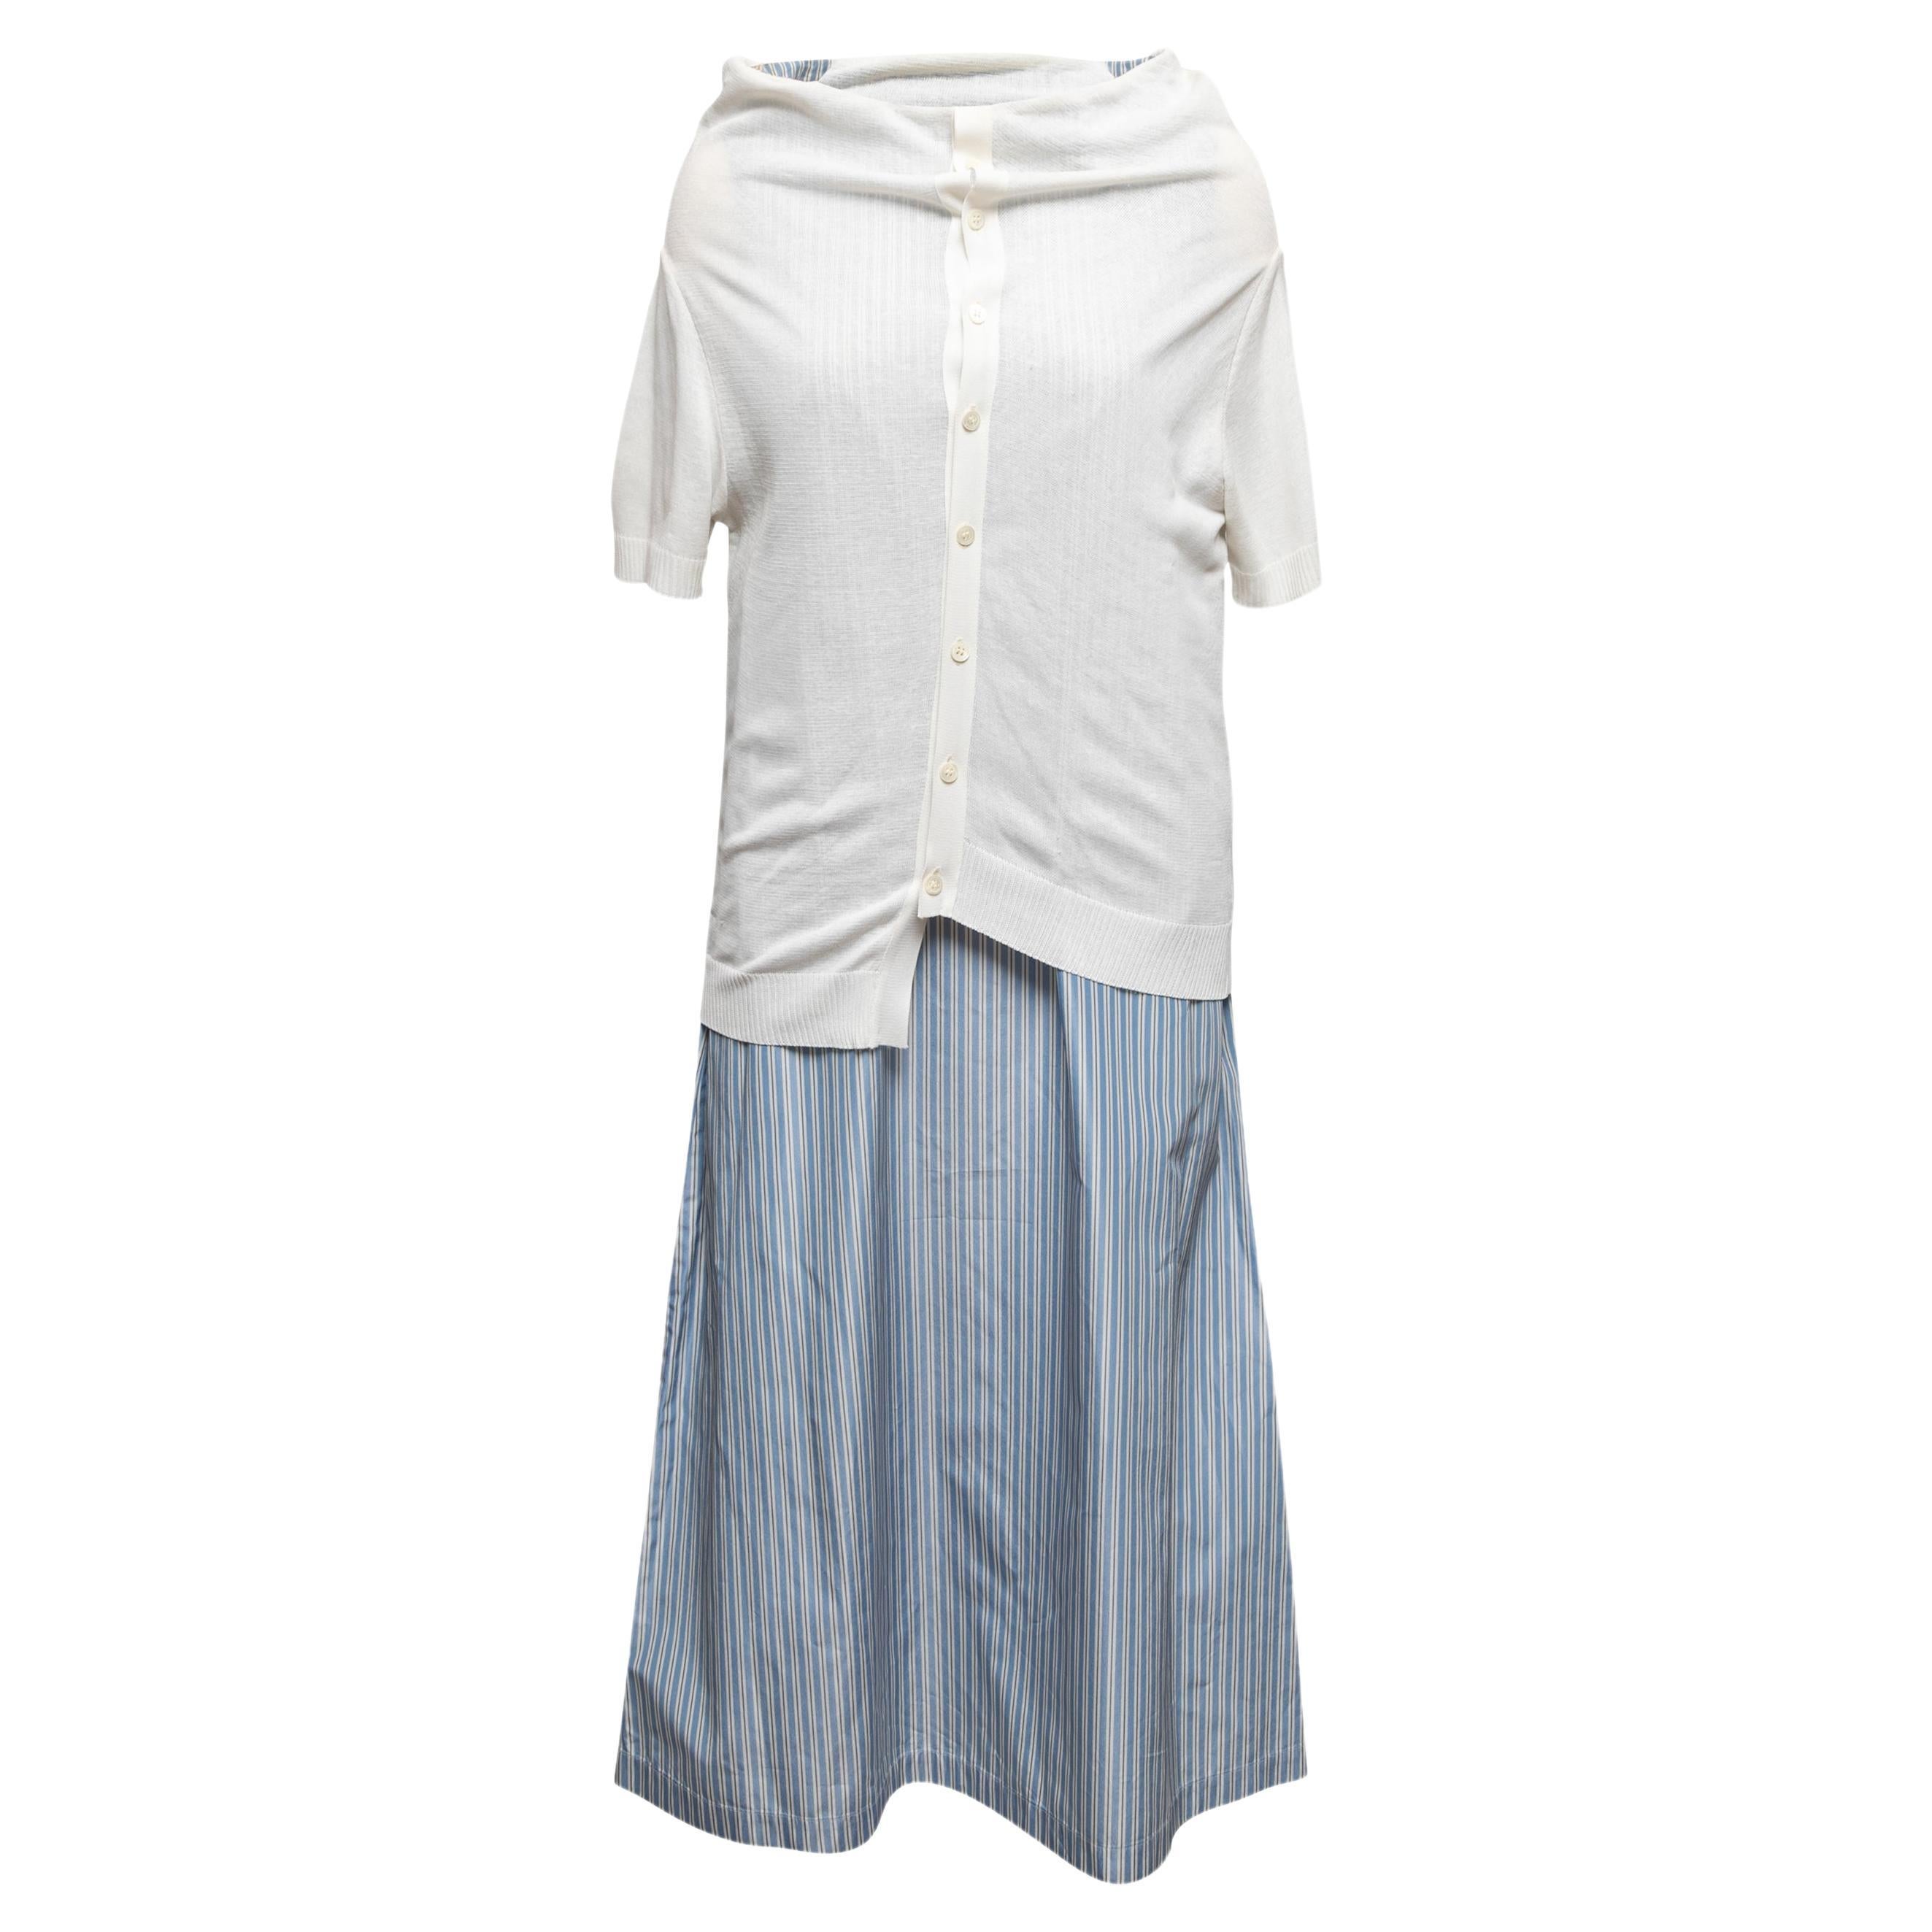 Vestido en capas Comme Des Garcons de tricot blanco y azul claro Talla US S